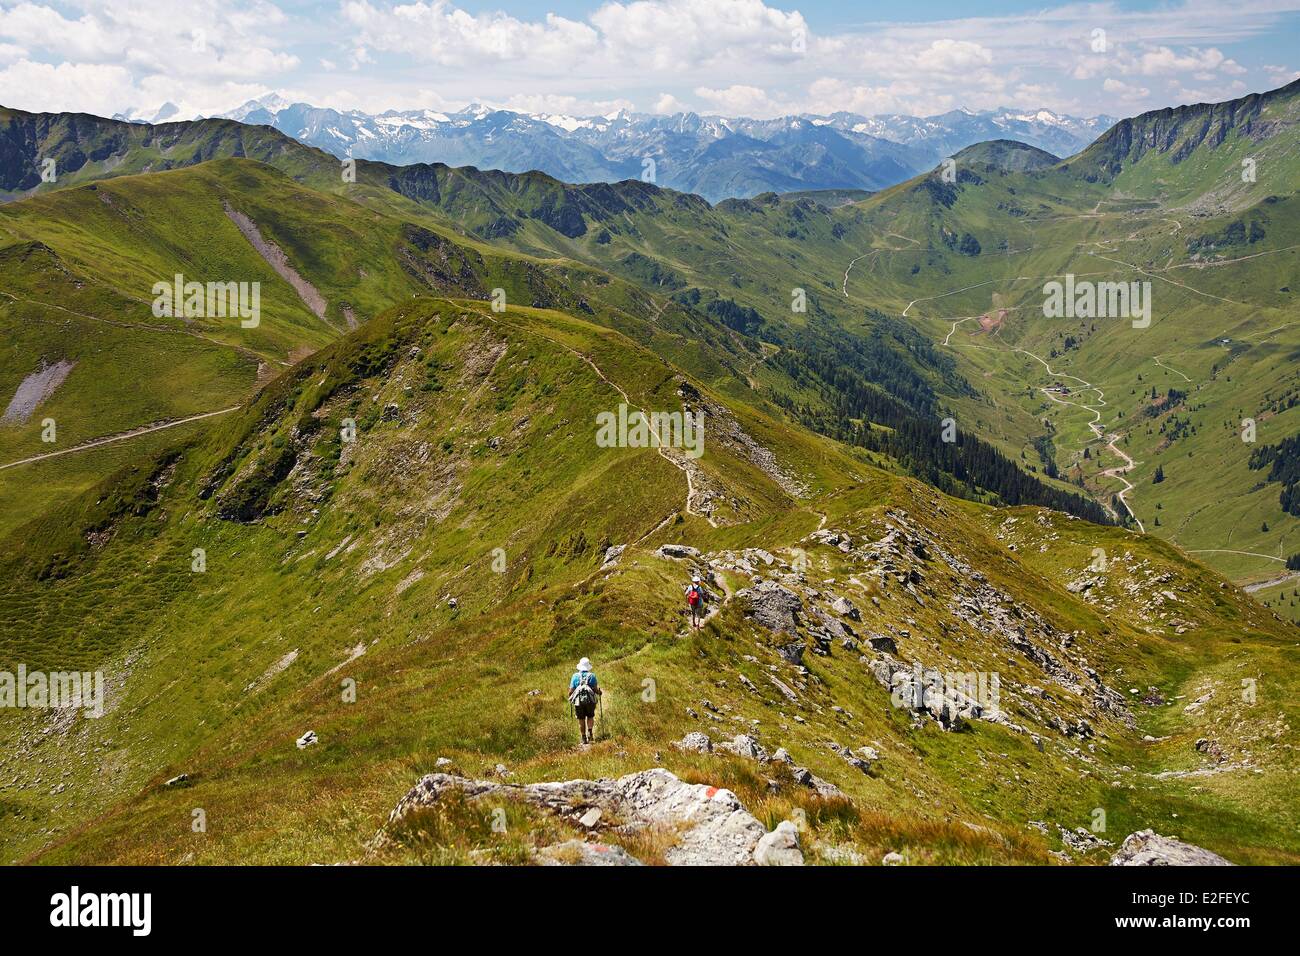 Austria, Land of Salzburg, Kitzbuhel Alps, Saalbach Hinterglemm, Saalbach Hinterglemm valley, view of High Tauern mountain range Stock Photo